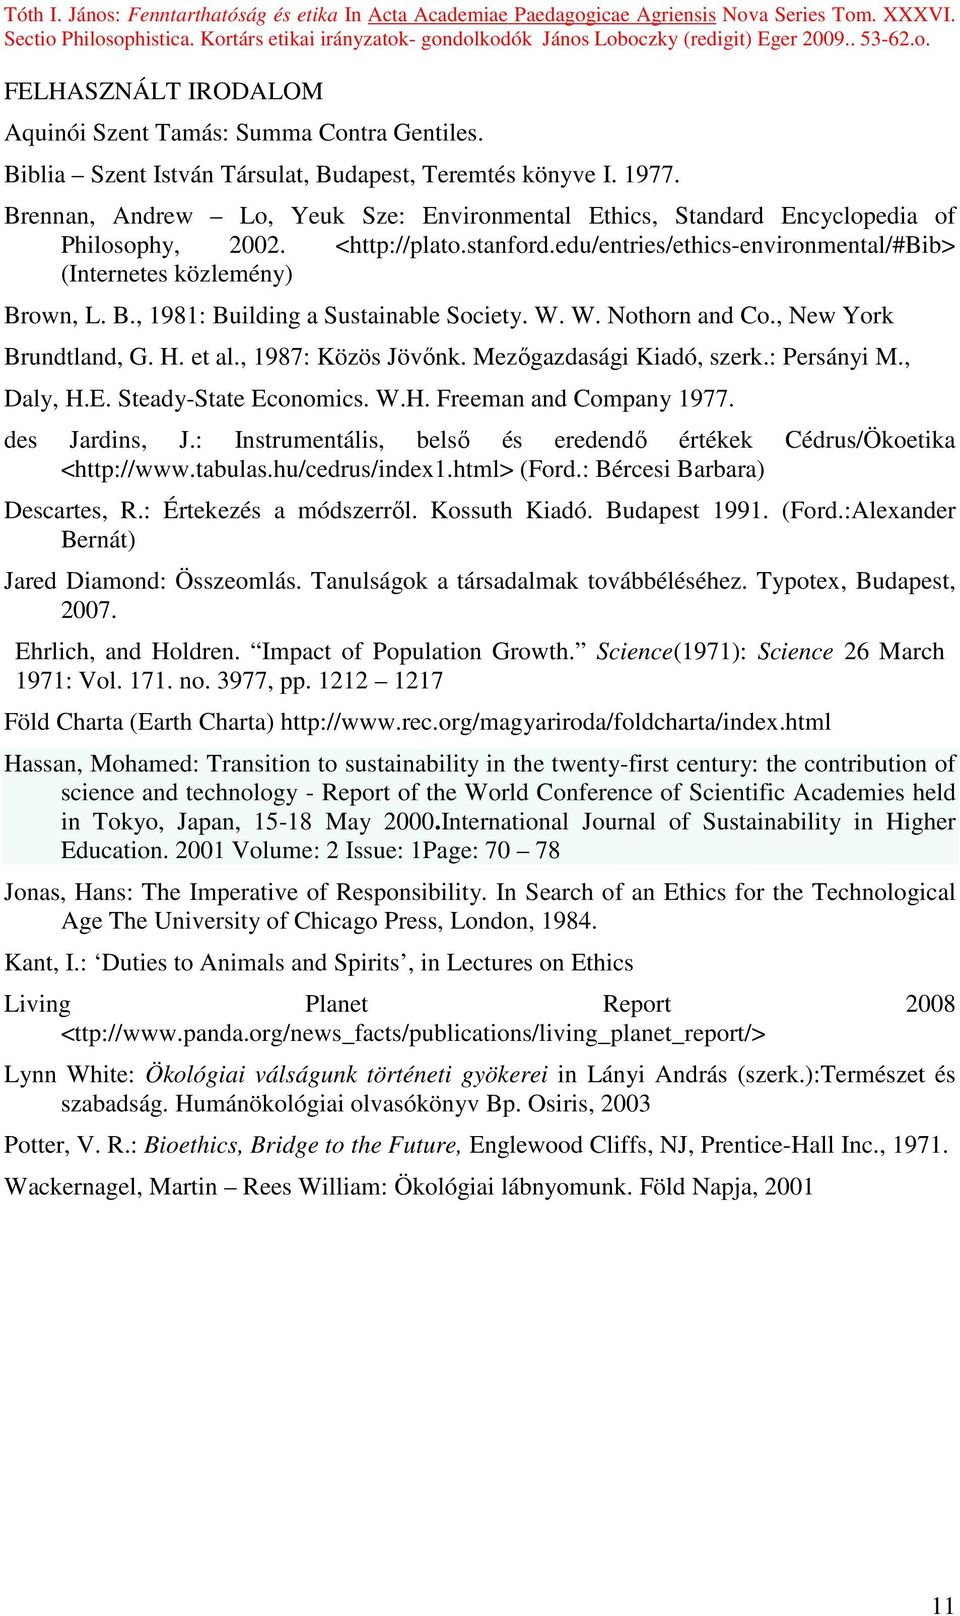 own, L. B., 1981: Building a Sustainable Society. W. W. Nothorn and Co., New York Brundtland, G. H. et al., 1987: Közös Jövınk. Mezıgazdasági Kiadó, szerk.: Persányi M., Daly, H.E.